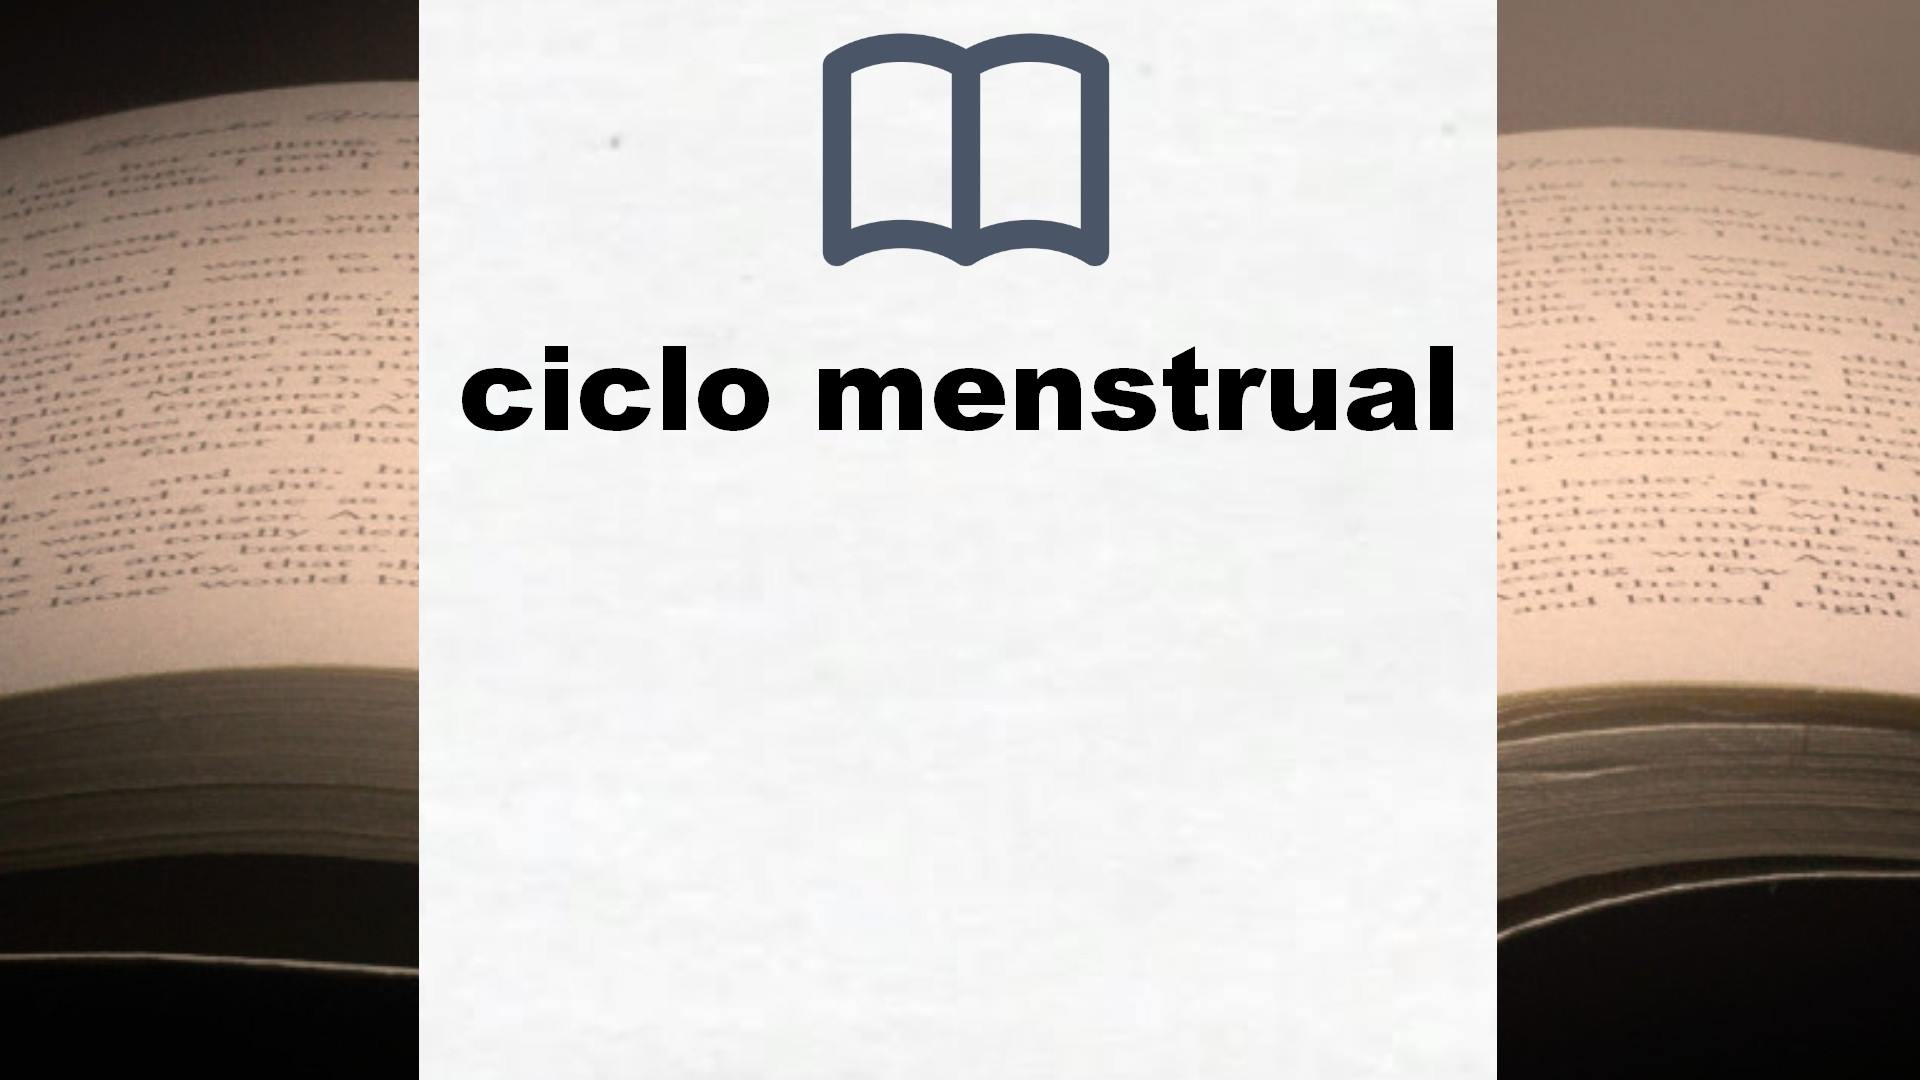 Libros sobre ciclo menstrual